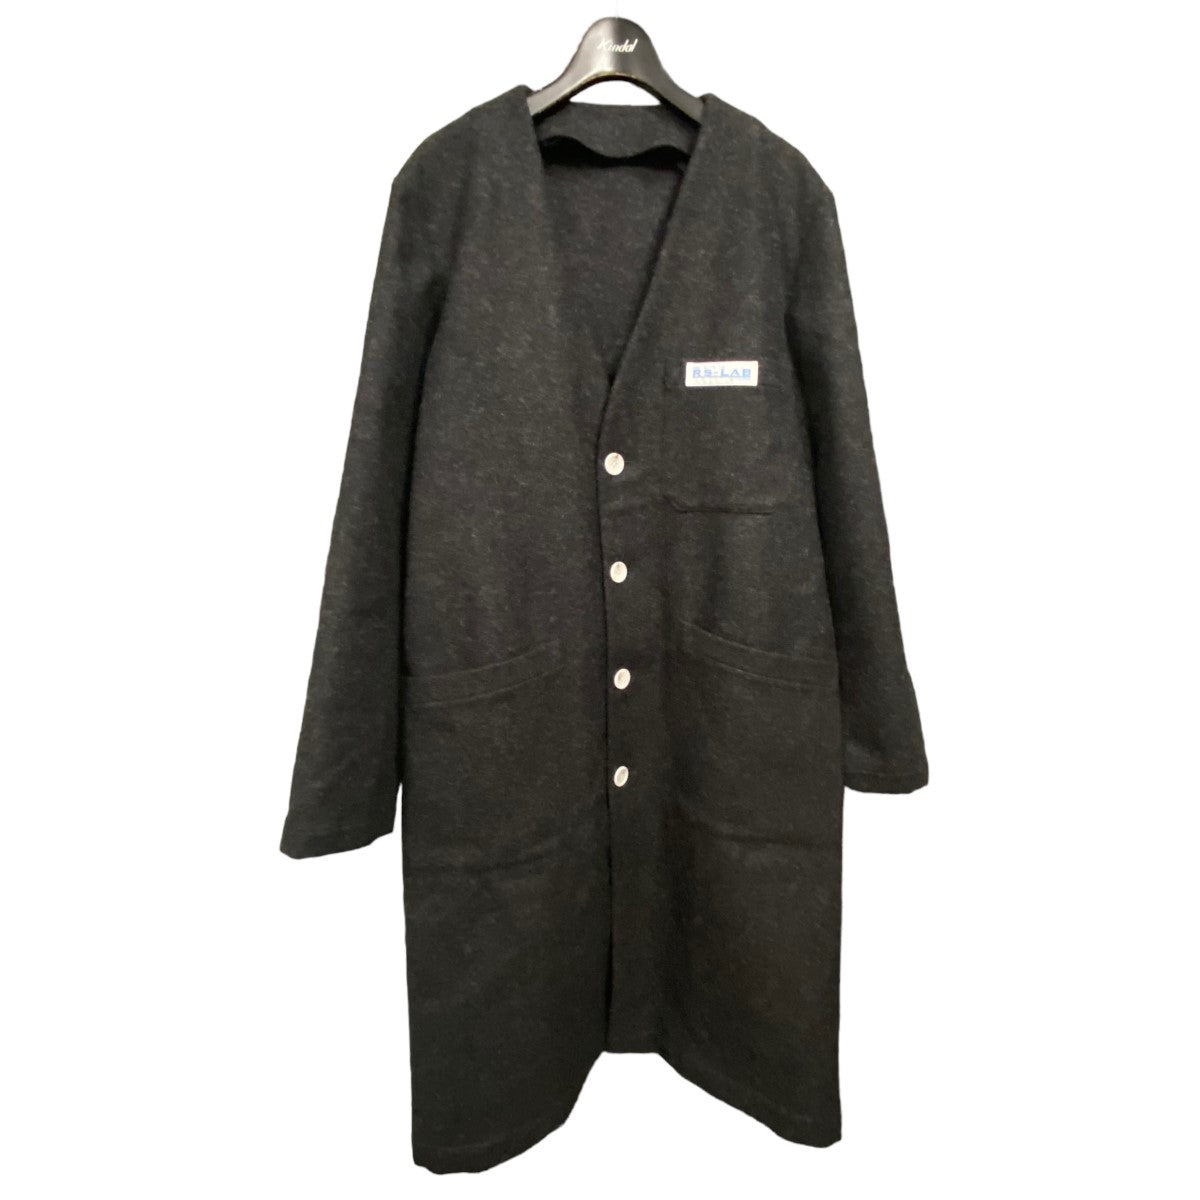 RAF SIMONS(ラフシモンズ) 20AW 「Classic labo coat」クラシックラボ 